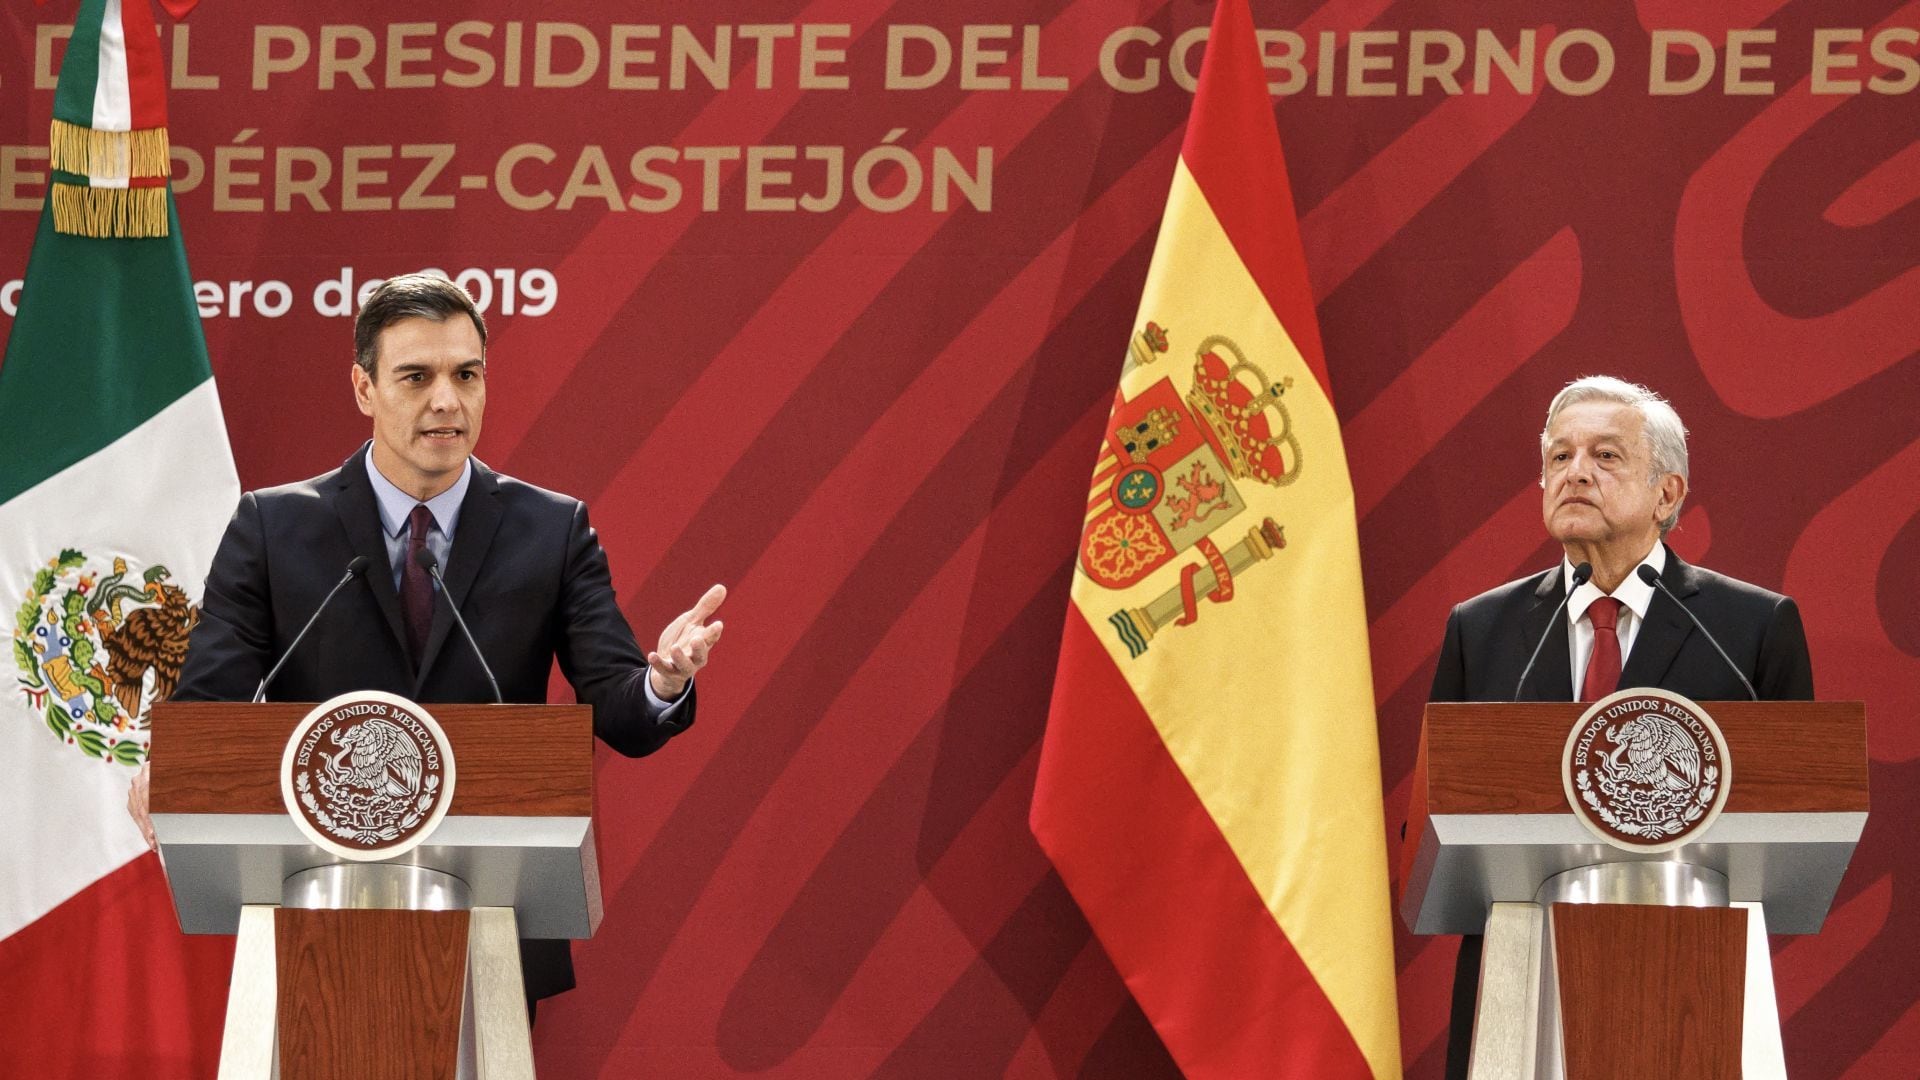 La primera reunión bilateral de AMLO fue con Pedro Sánchez Pérez-Castrejón, presidente del Gobierno de España.